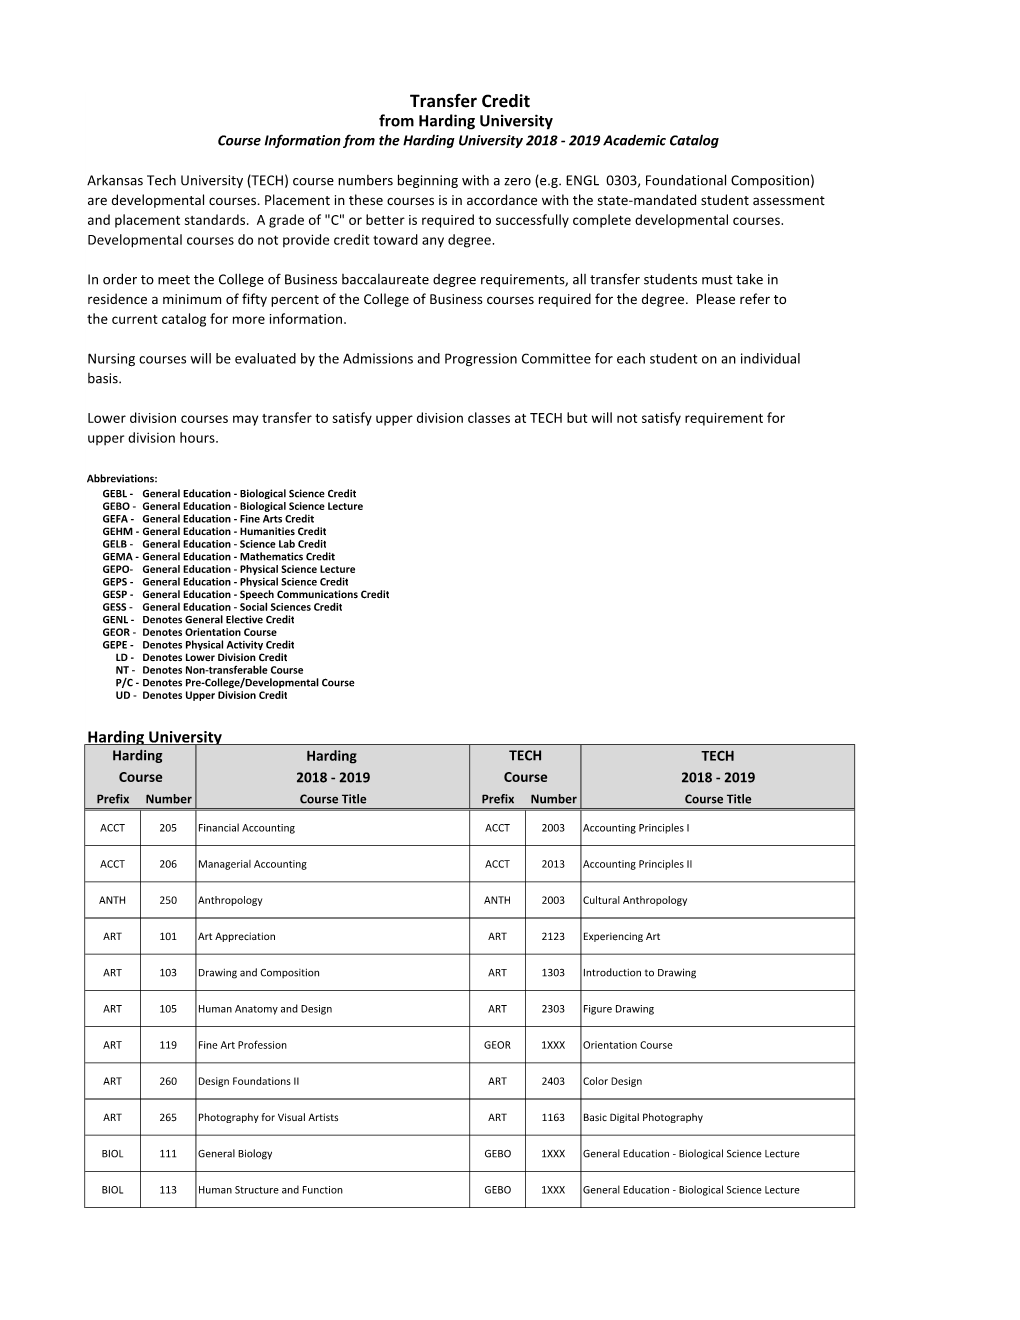 Harding University Course Information from the Harding University 2018 ‐ 2019 Academic Catalog